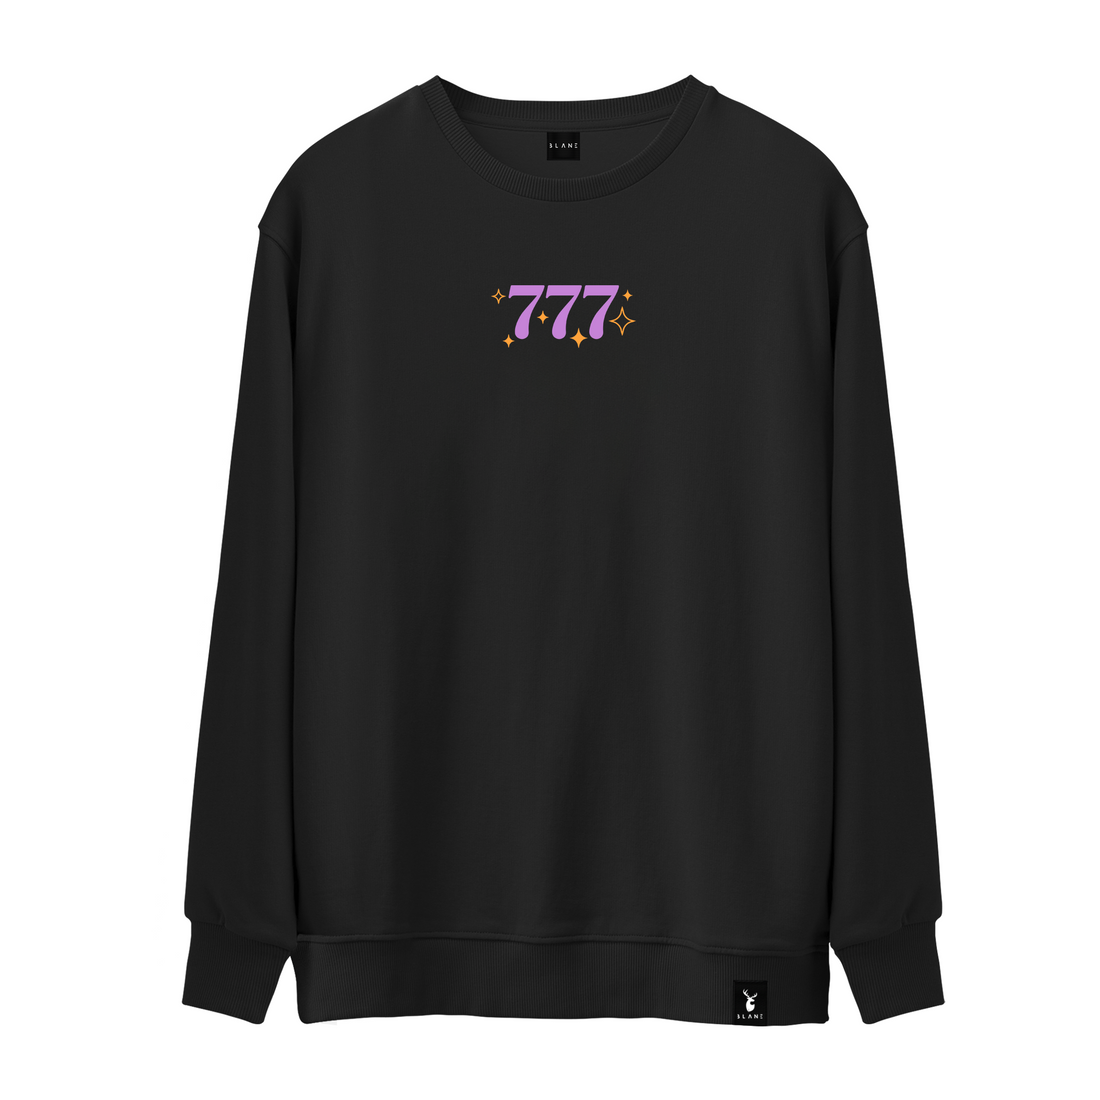 777 - Sweatshirt